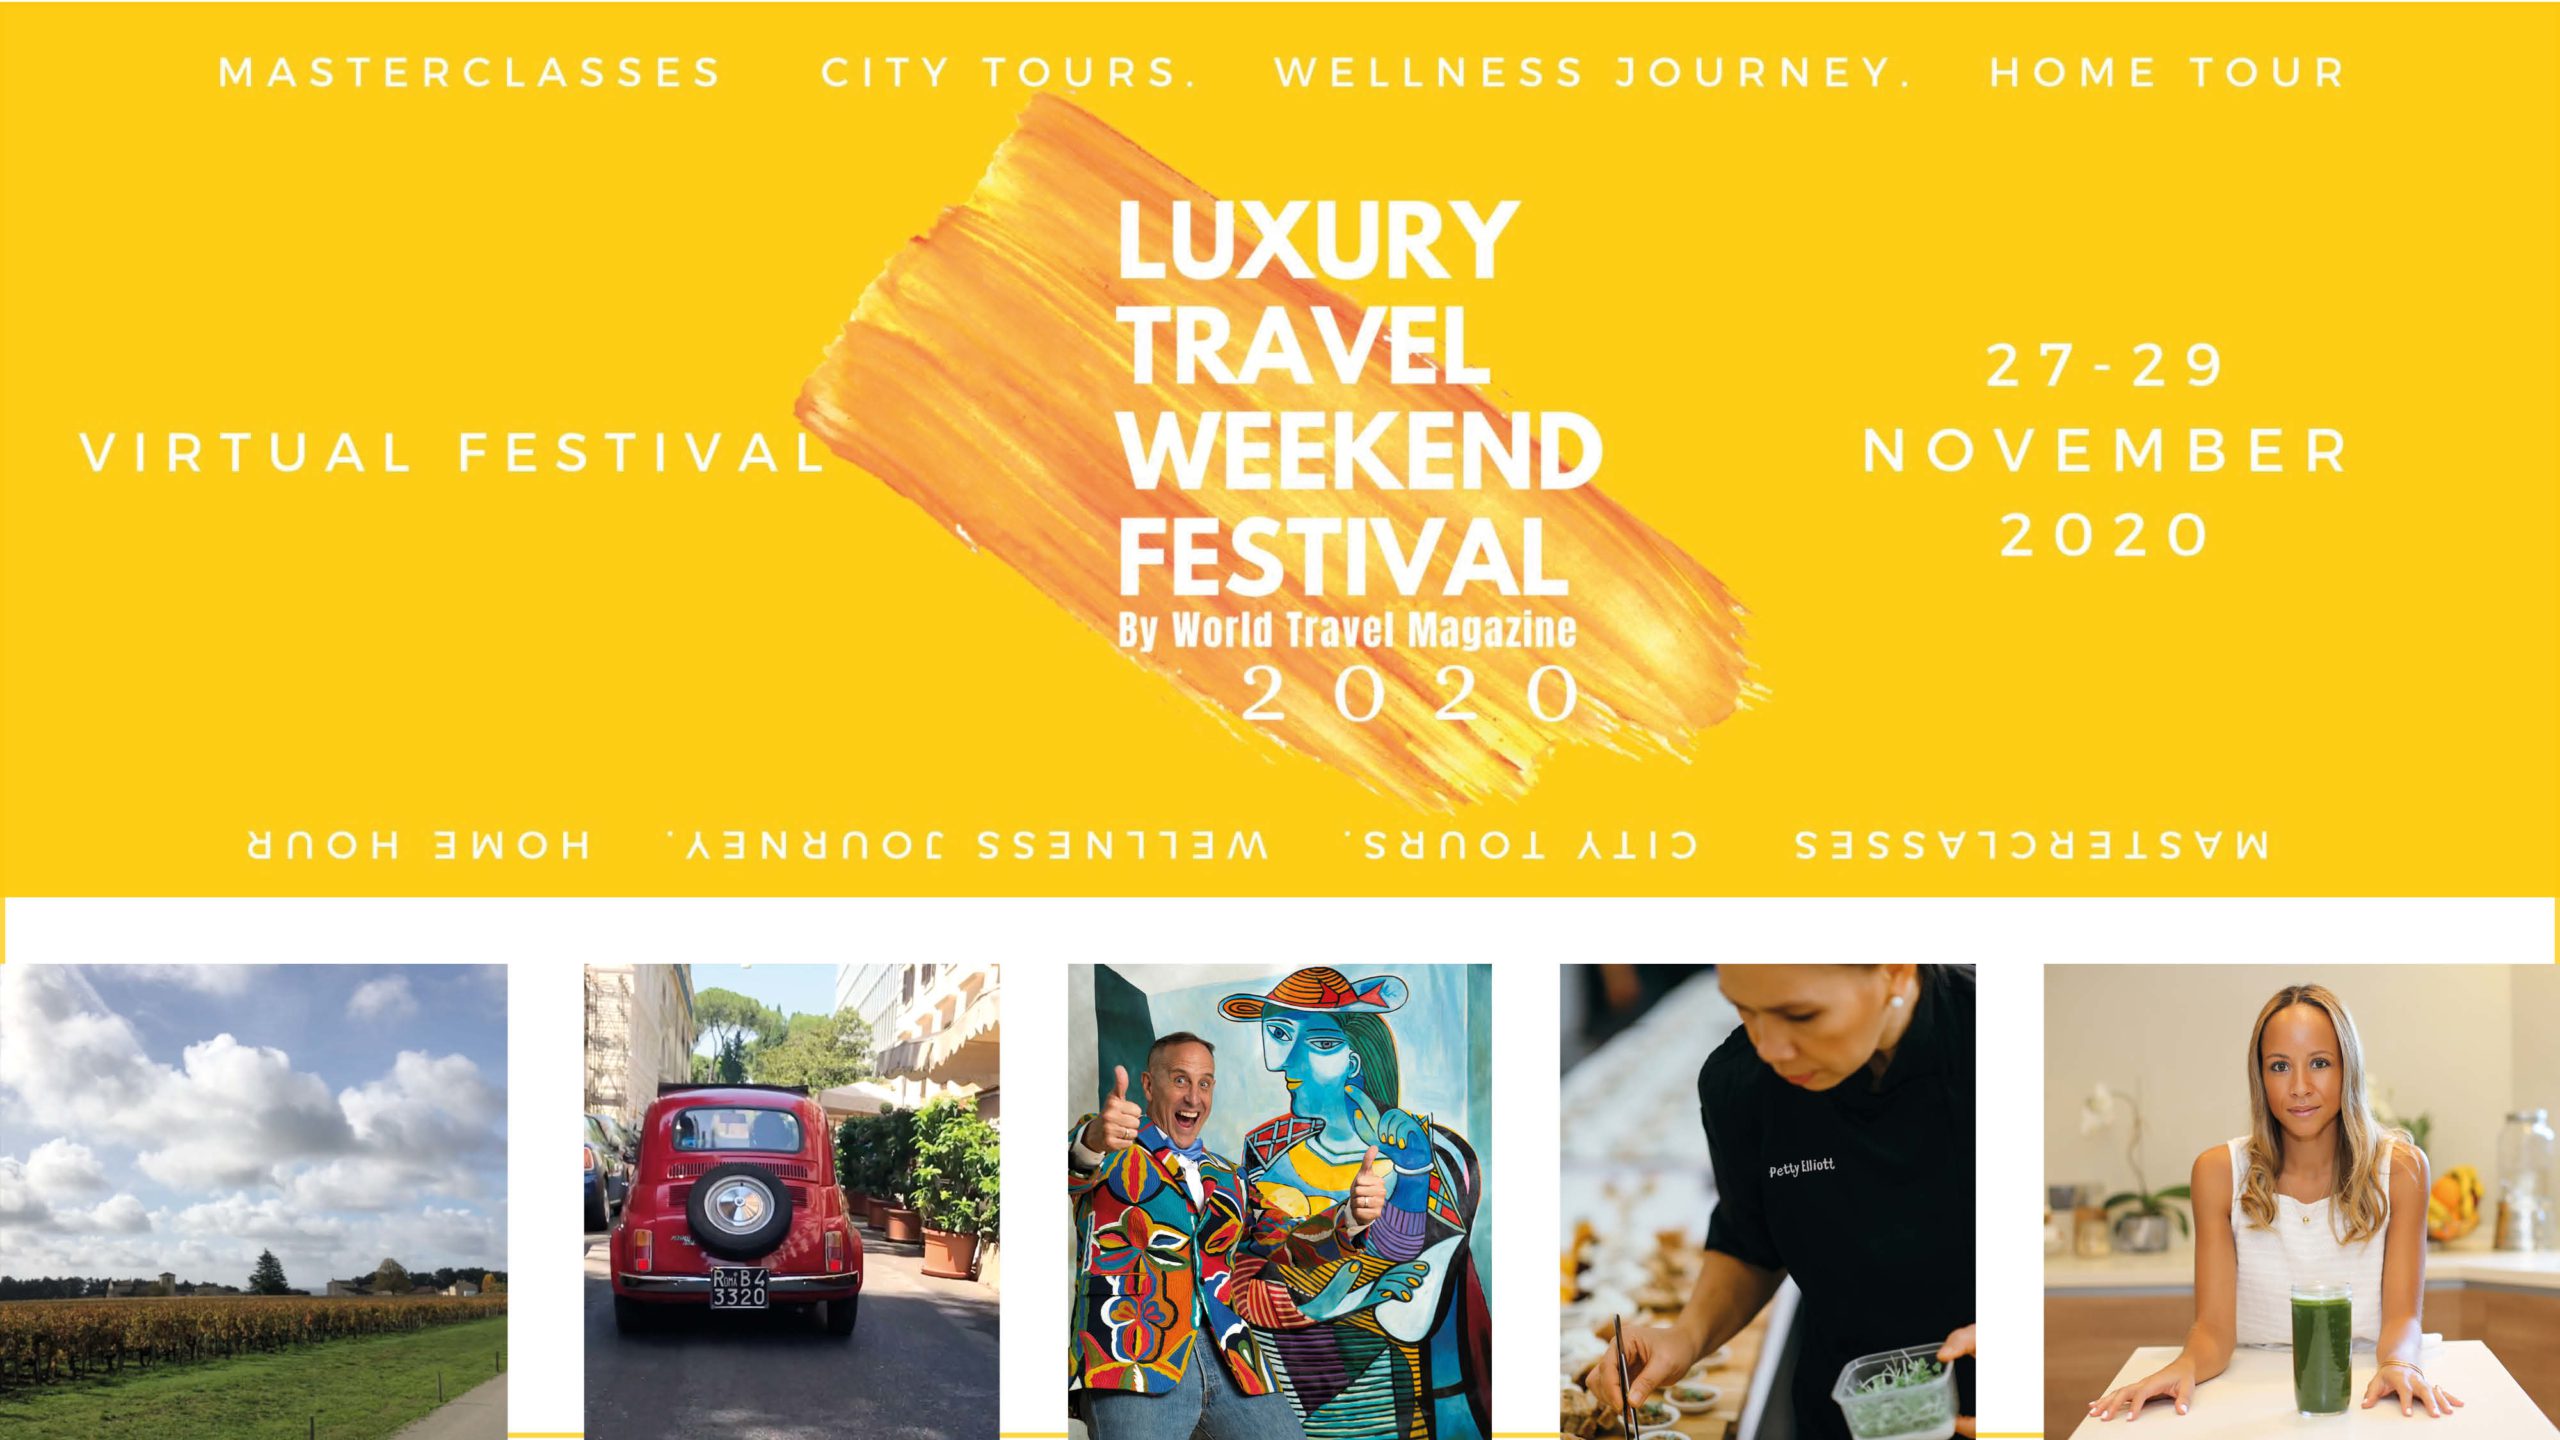 World Travel Magazine Luxury Travel Weekend Festival 2020